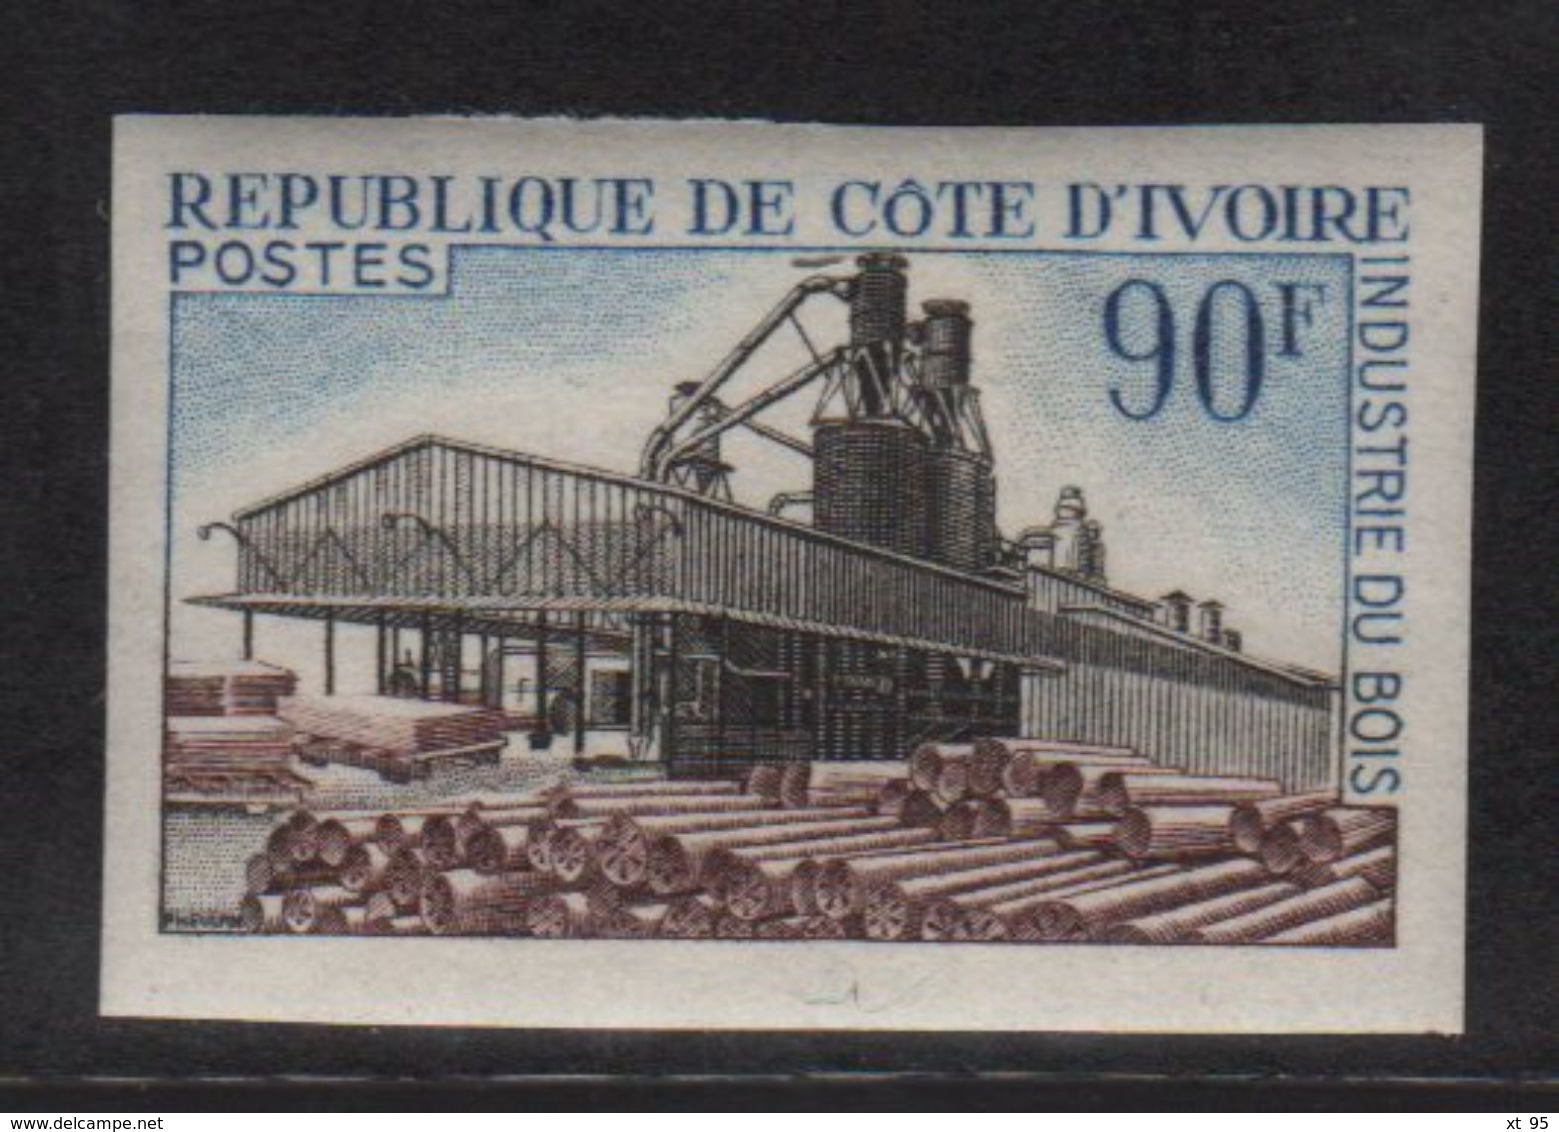 Cote D Ivoire - N°276 Non Dentele ** - Industrie Du Bois - Ivoorkust (1960-...)